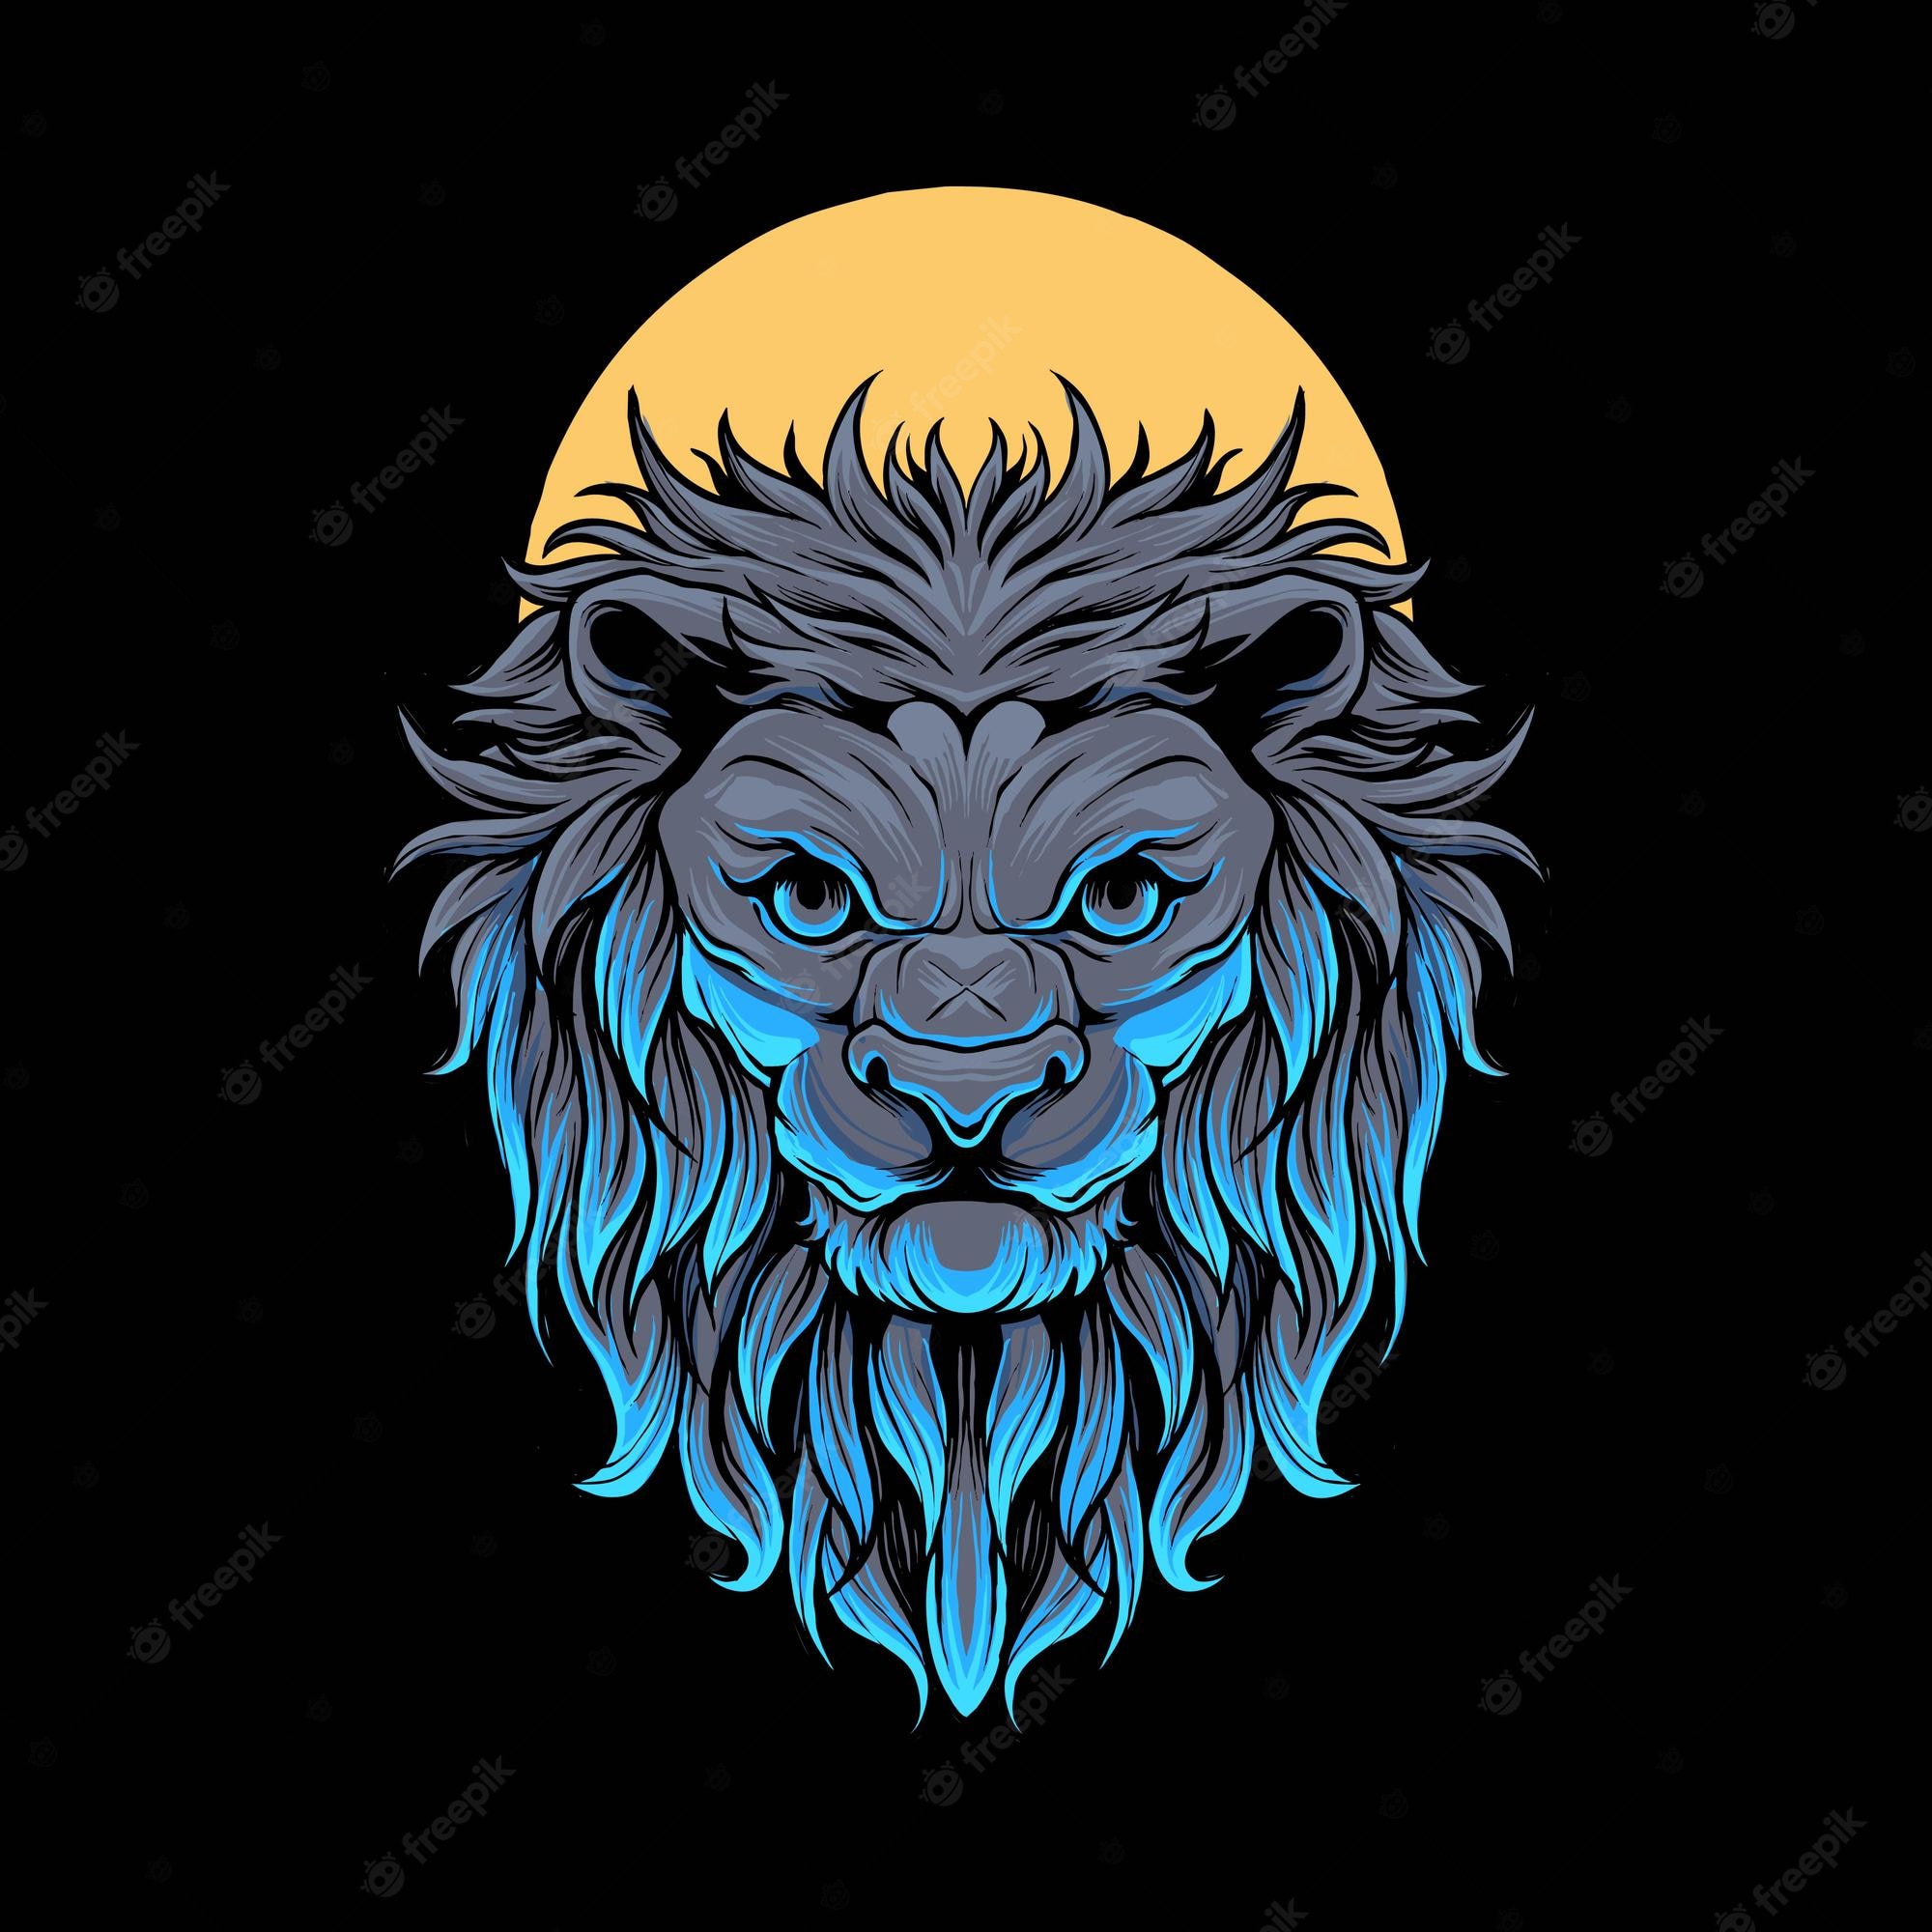 Premium Vector. Lion head illustration premium vector